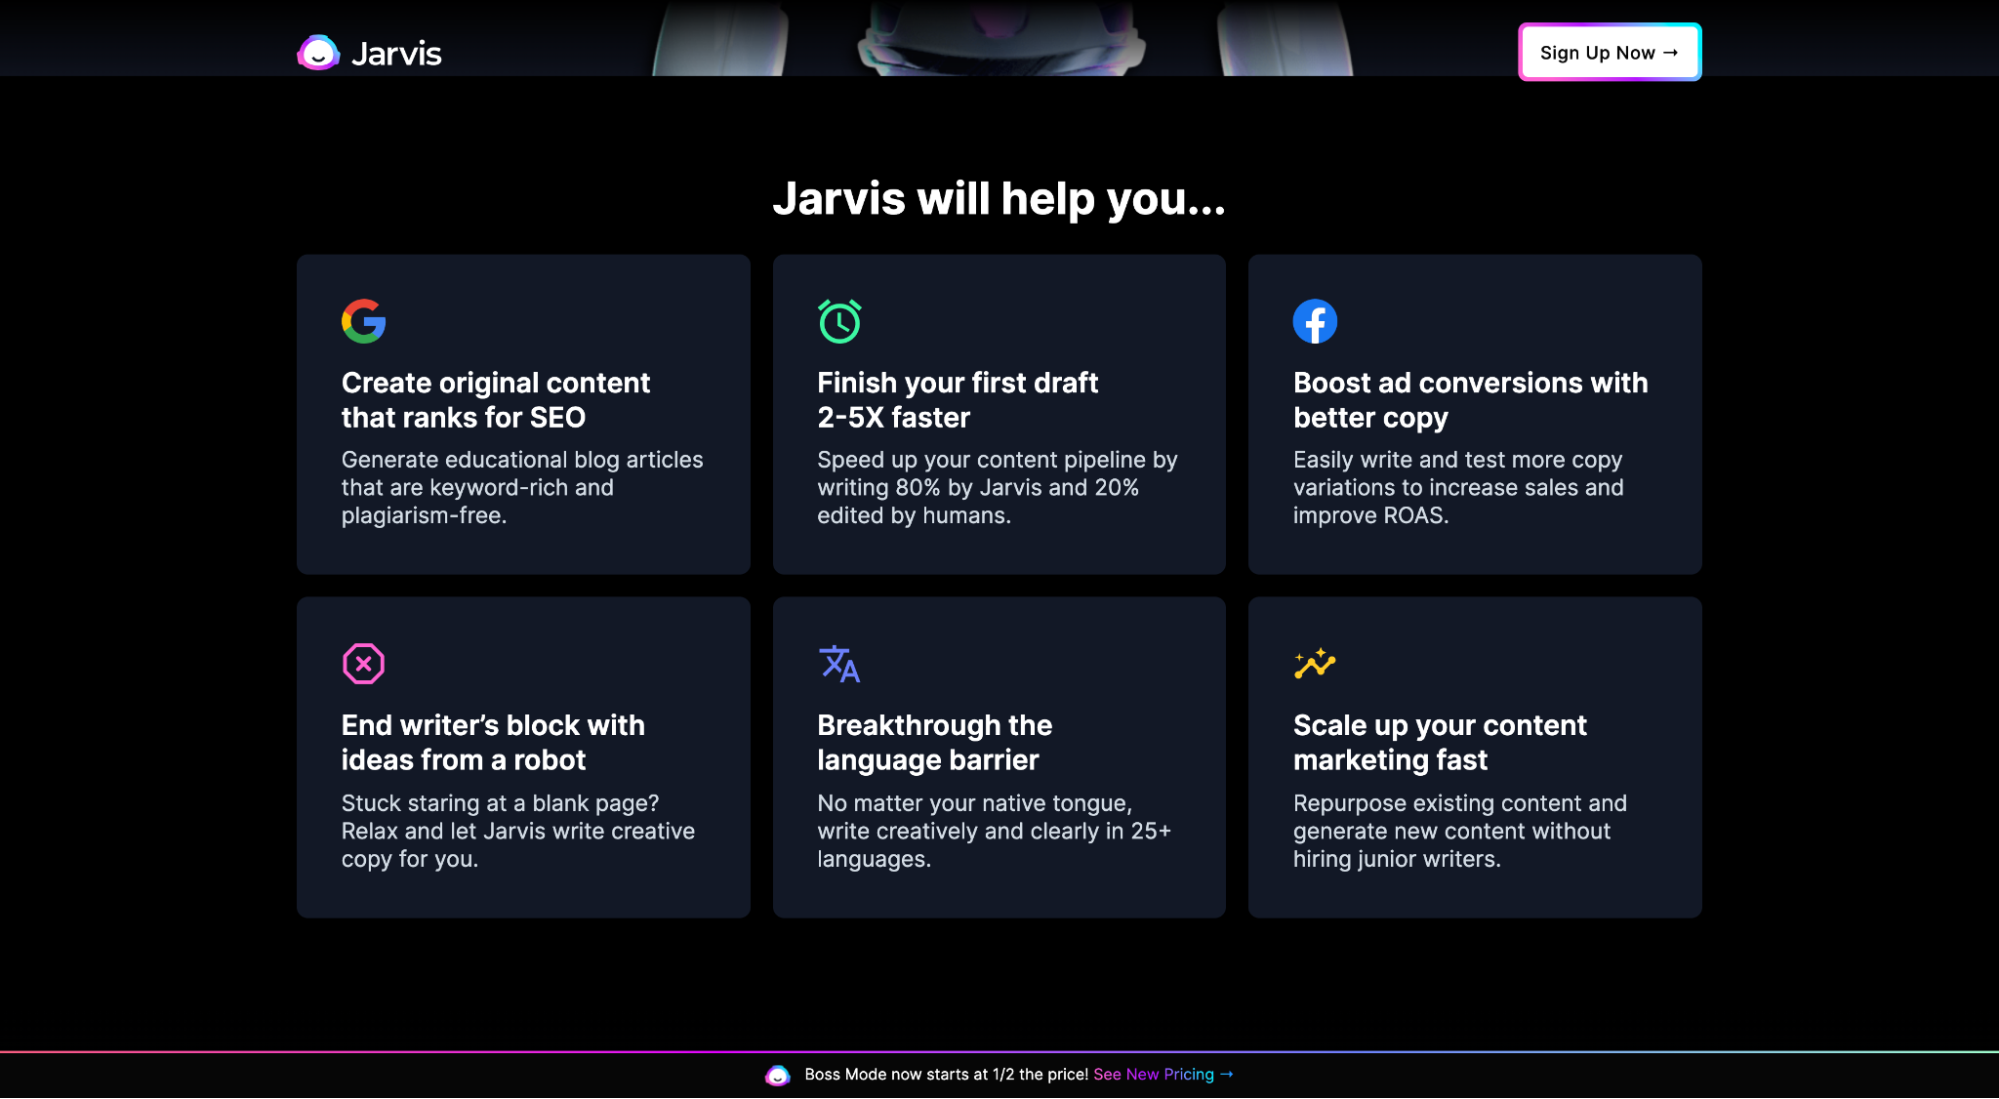 Jarvis’ benefits